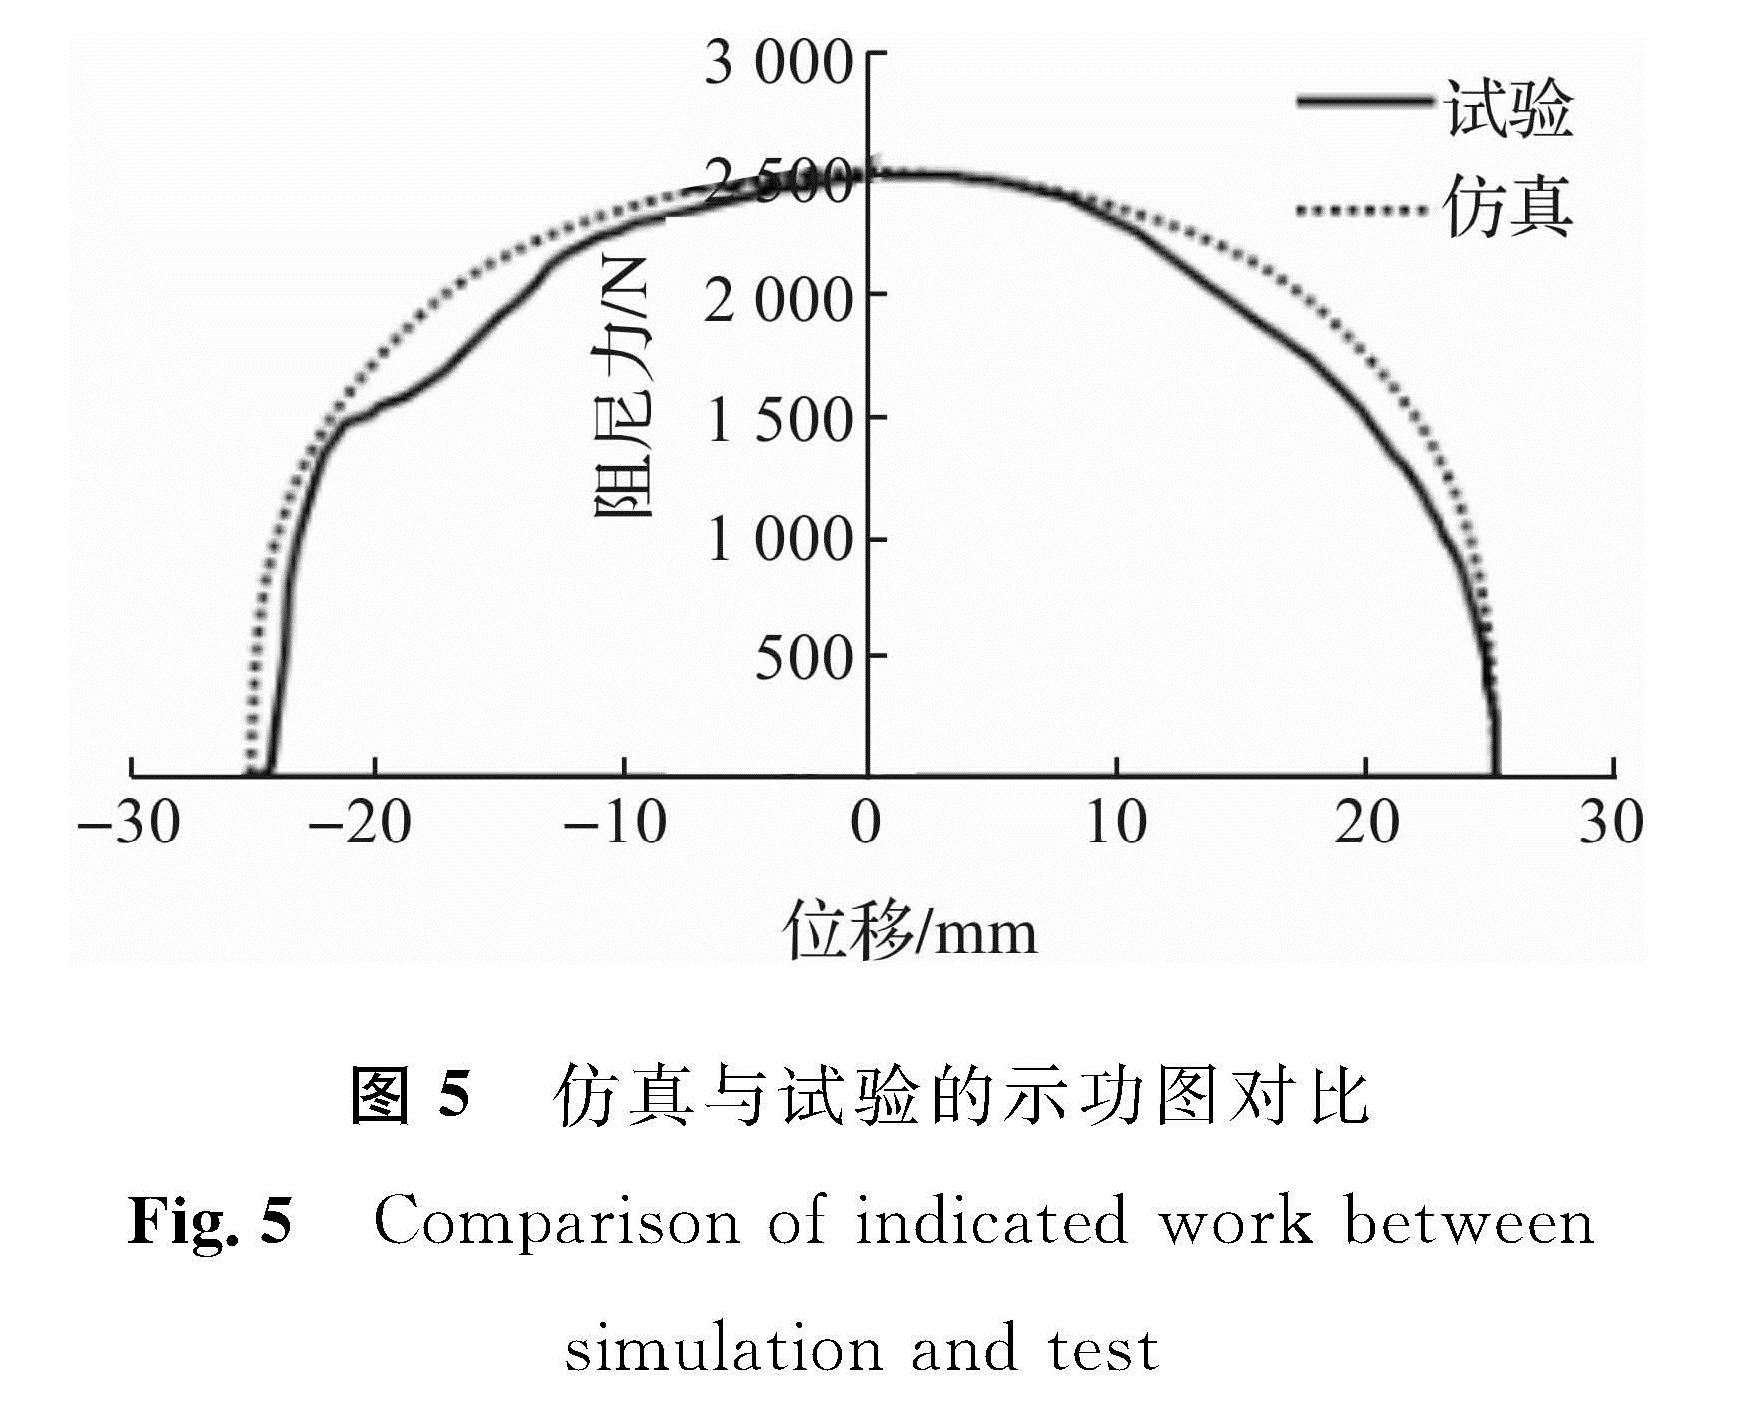 图5 仿真与试验的示功图对比<br/>Fig.5 Comparison of indicated work between simulation and test